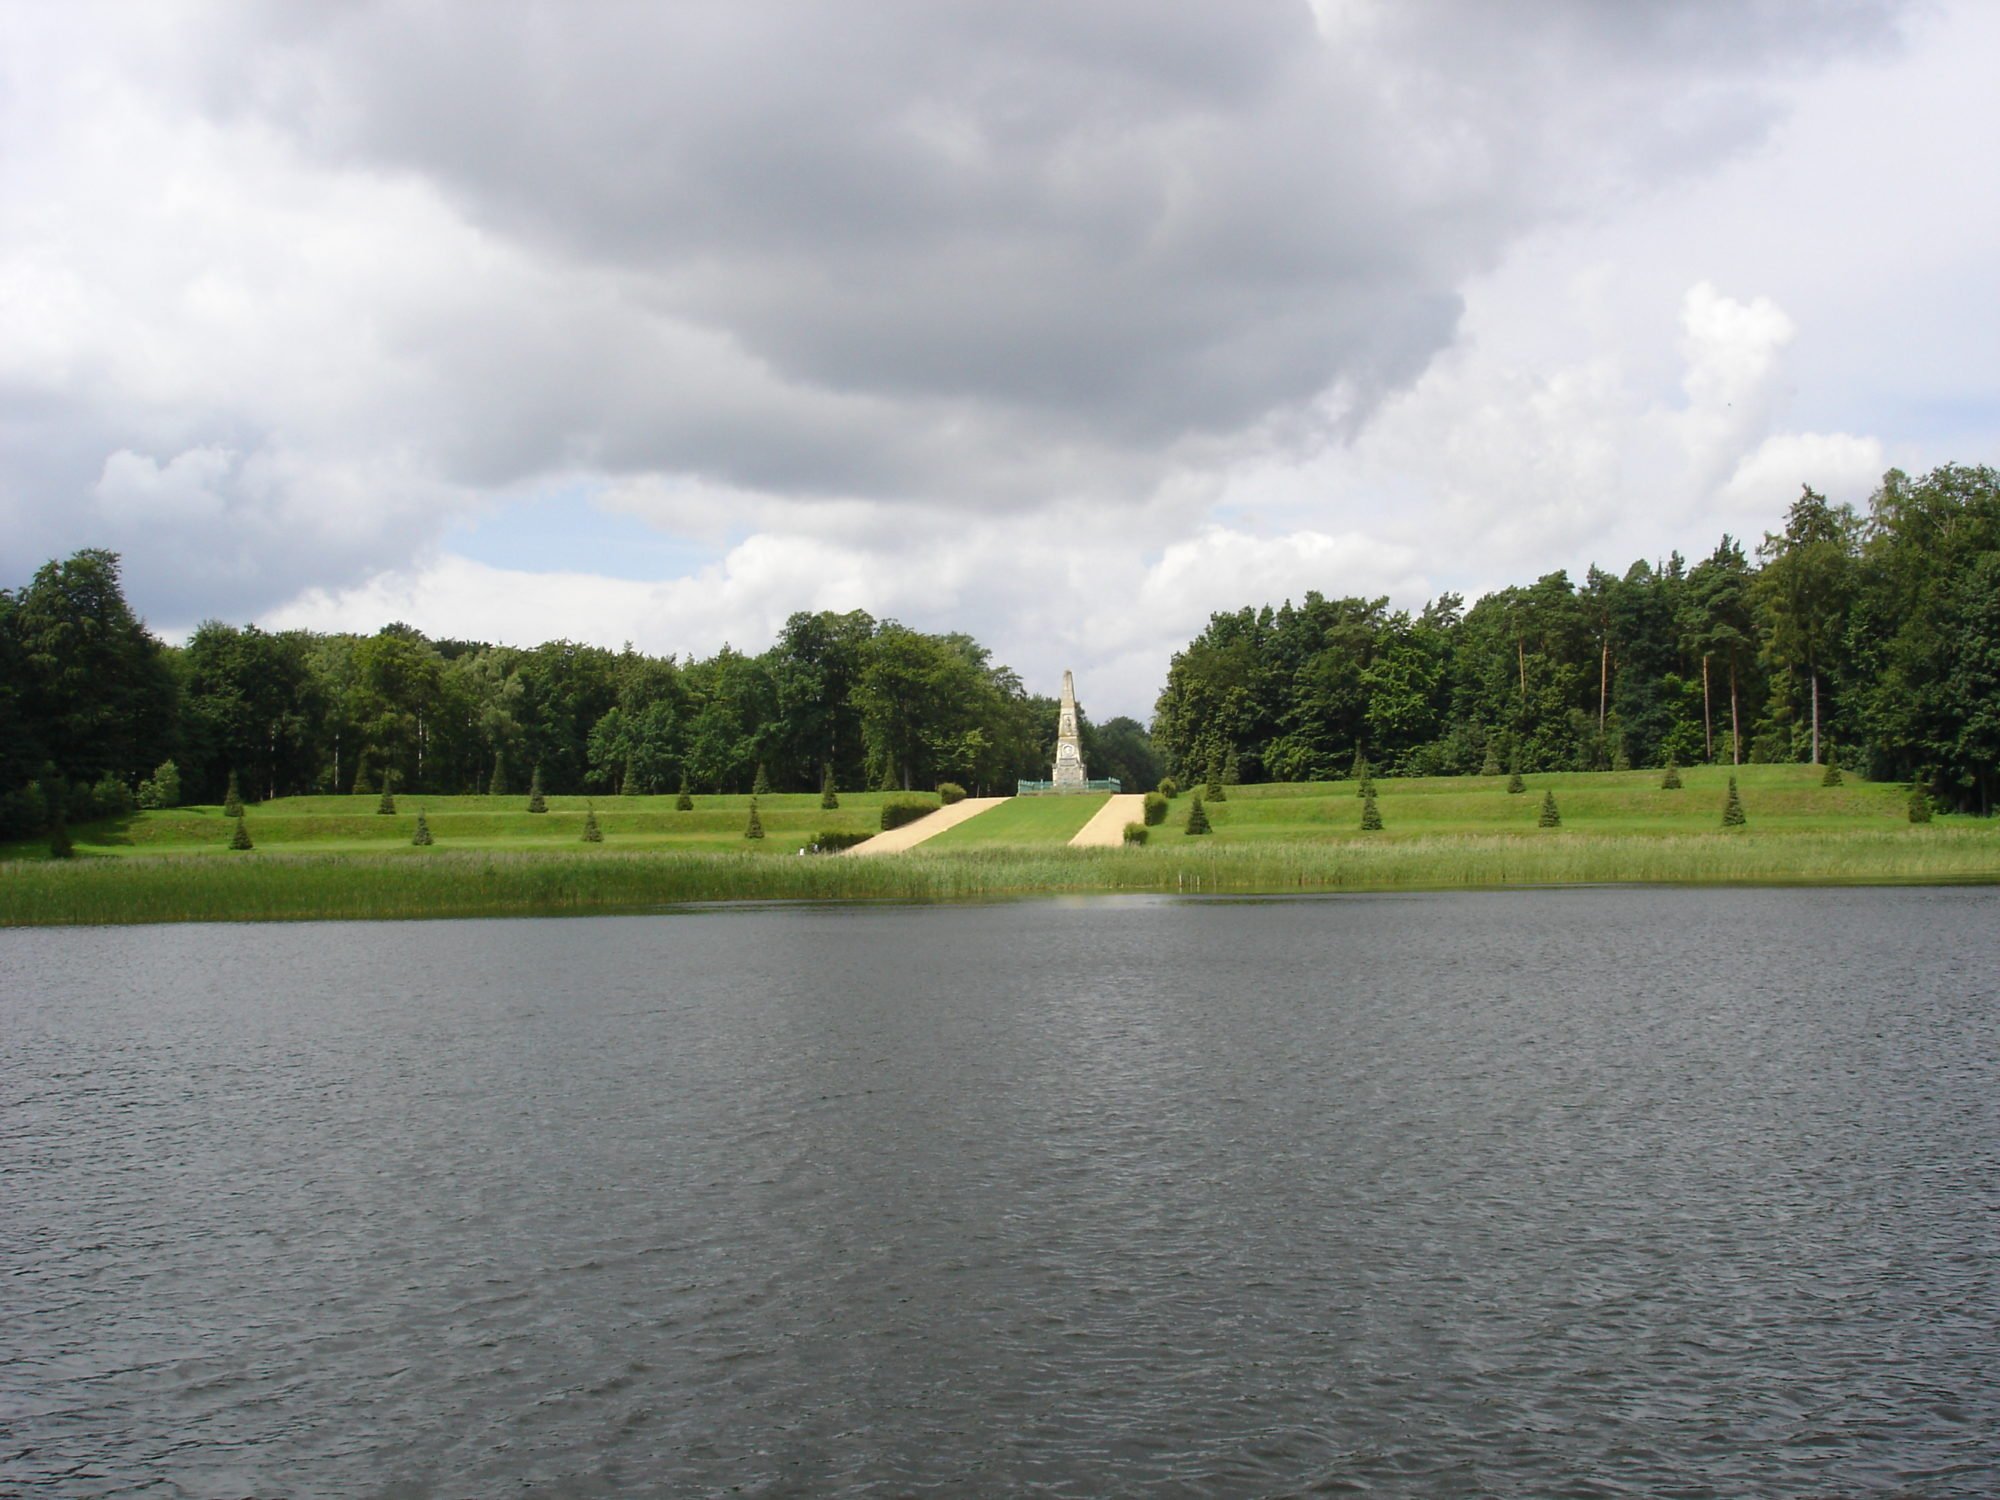 Der Rheinsberger Obelisk ist in der Bildmitte zu sehen. Im Bildvordergrund ist der Grienericksee. Links und rechts stehen Wälder. Fontane nennt den Obelisken die "größte Sehenswürdigkeit" in Rheinsberg.